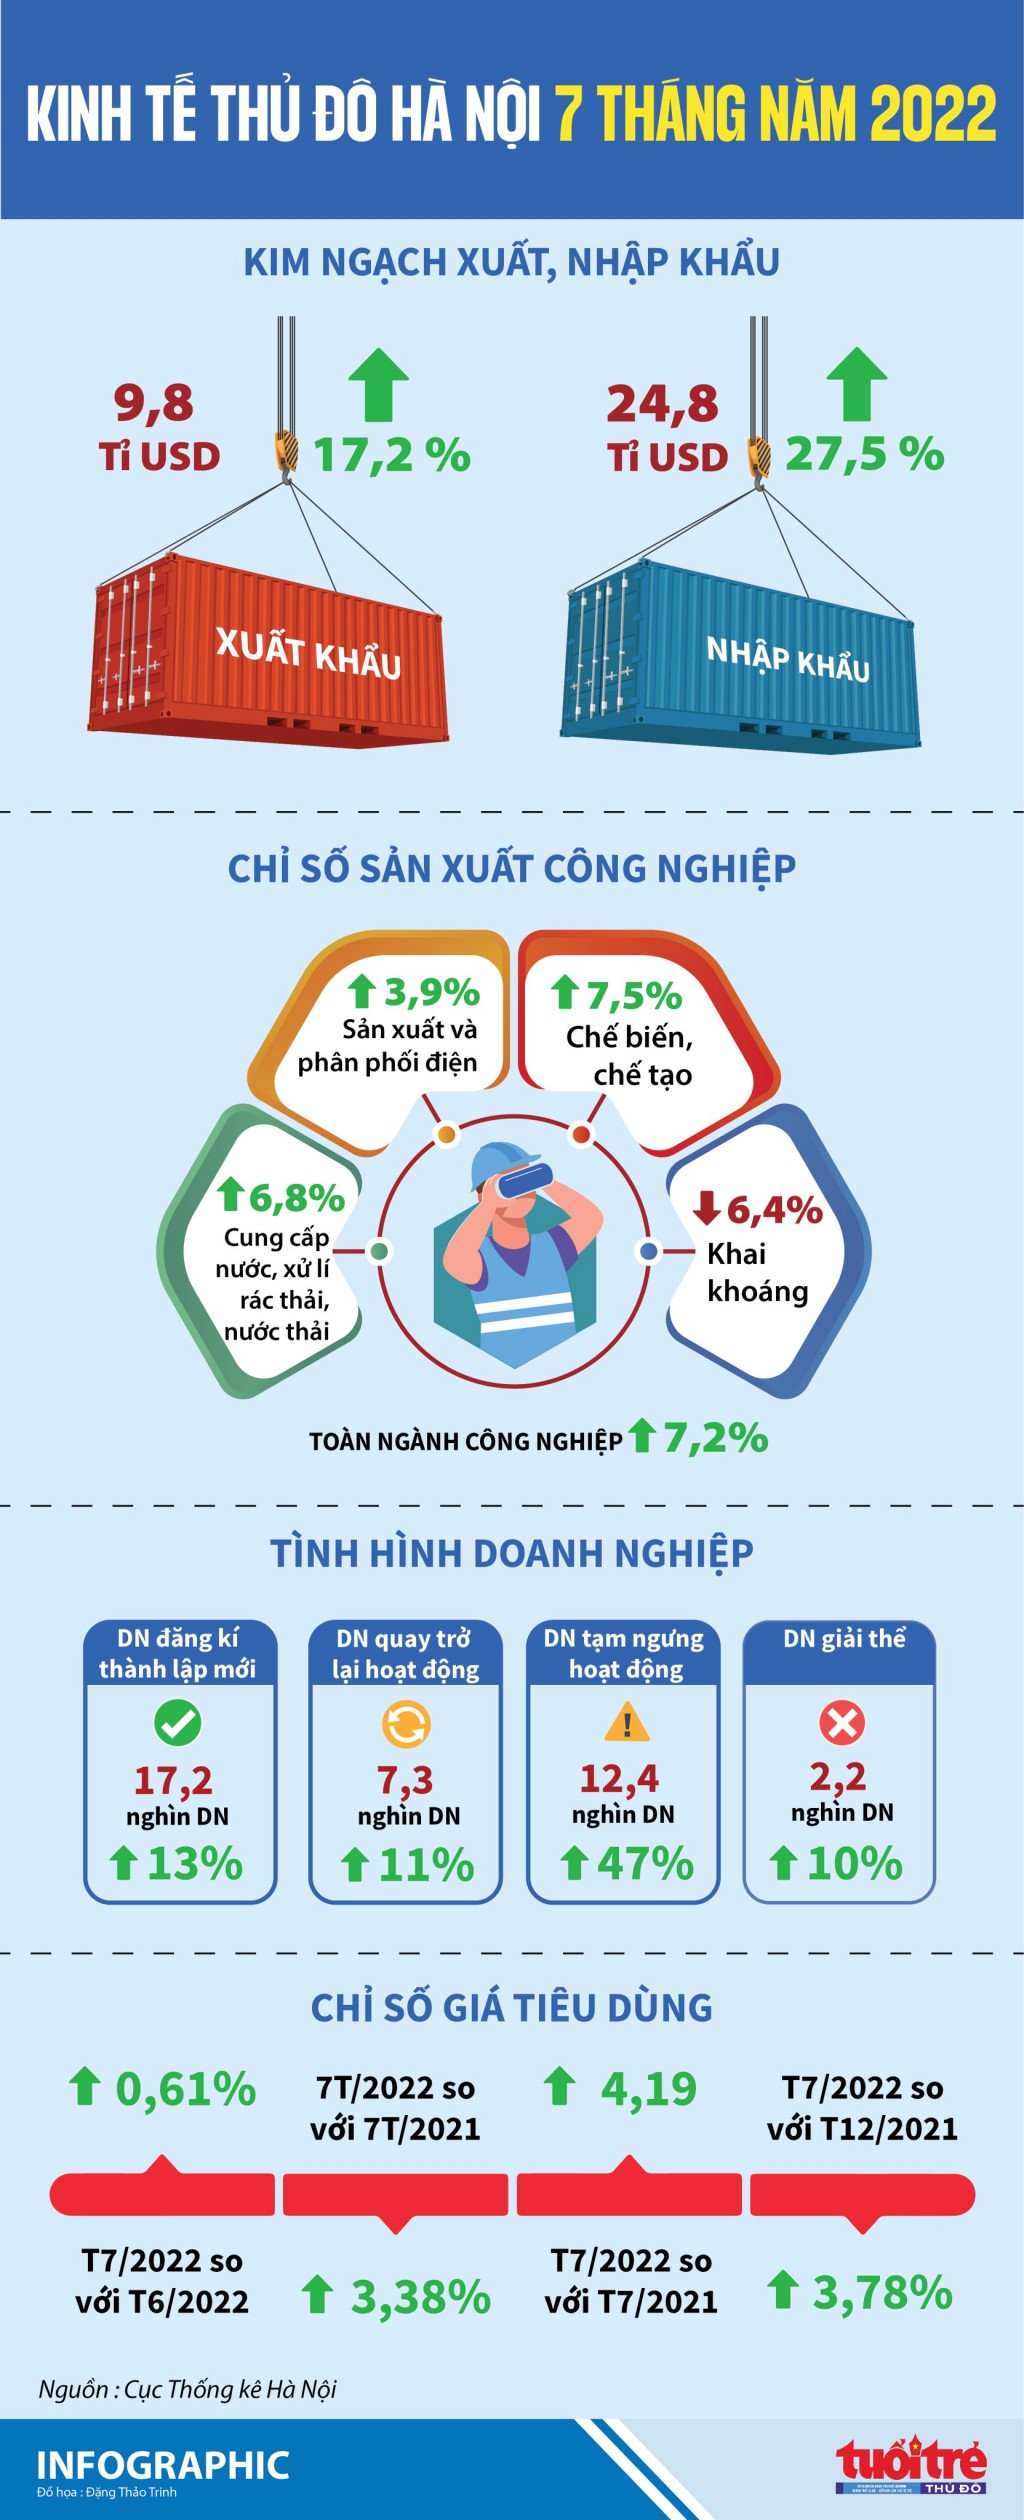 Kinh tế Thủ đô Hà Nội trong 7 tháng năm 2022